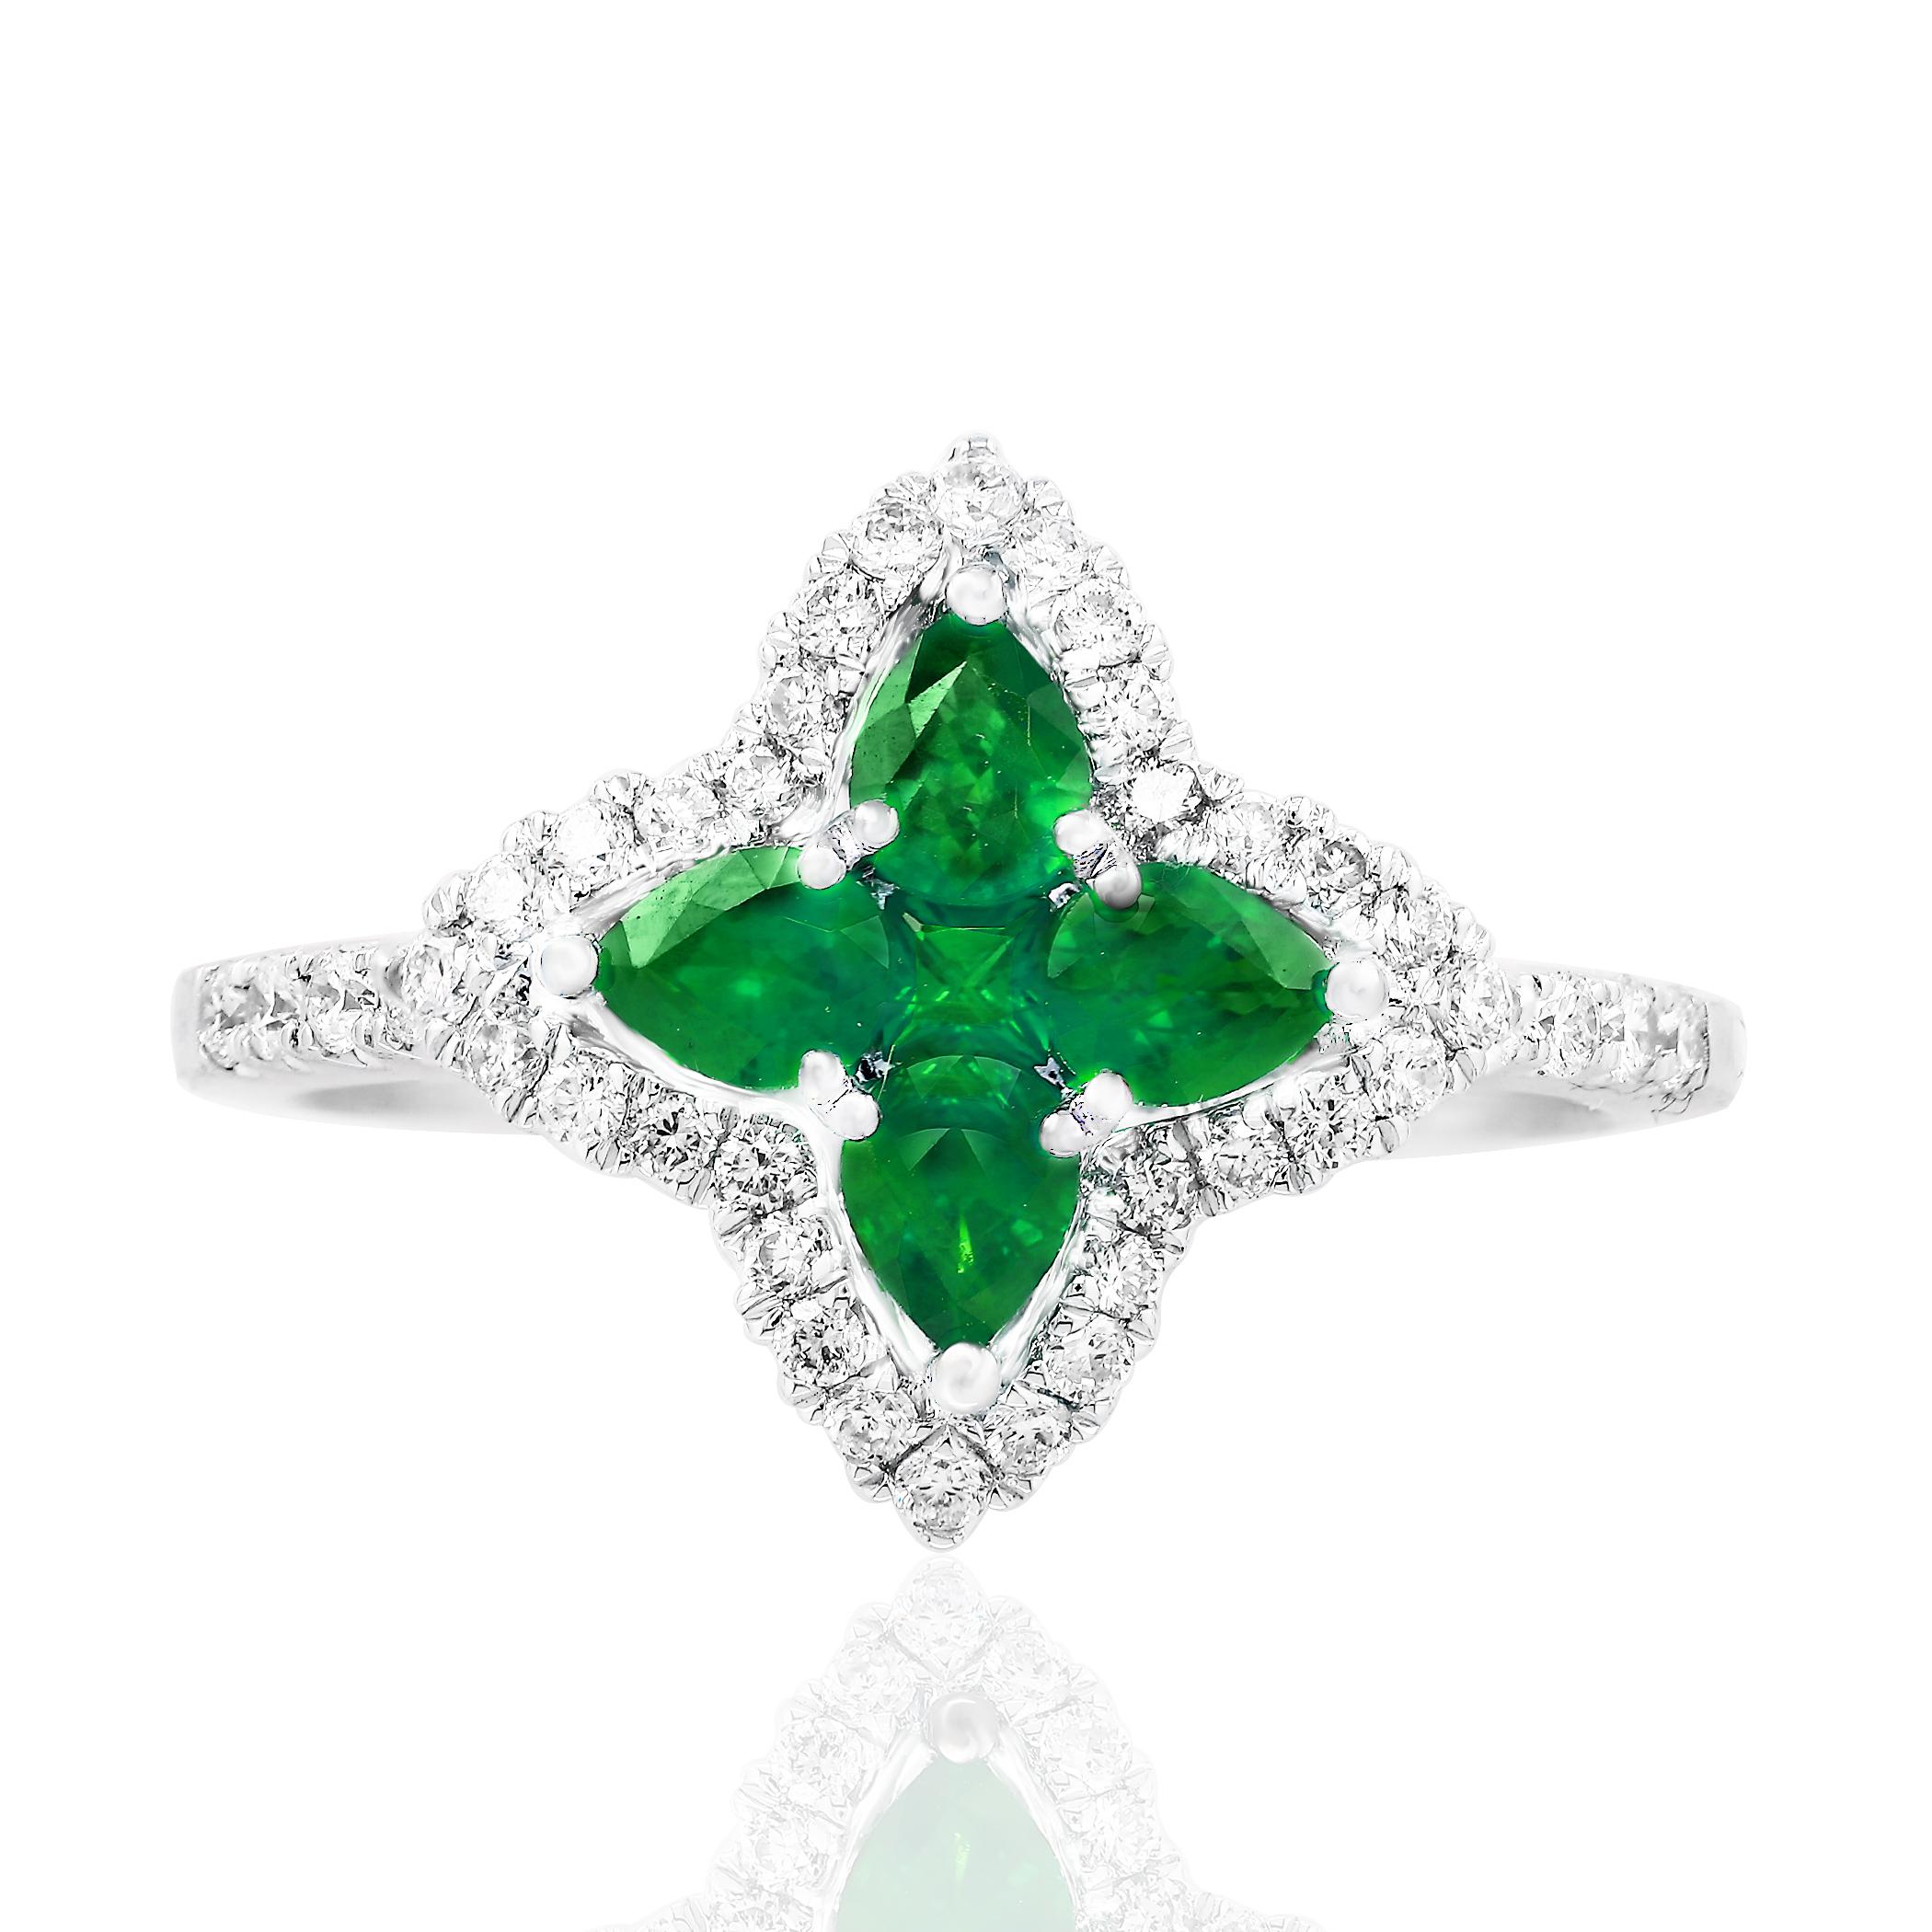 Farbiger Ring im Blumendesign mit 4 birnenförmigen Smaragden mit einem Gesamtgewicht von 0,56 Karat und 1 rundem Smaragd mit einem Gewicht von 0,05 Karat, akzentuiert durch eine Reihe von runden Brillanten. Die Diamanten wiegen insgesamt 0,35 Karat.